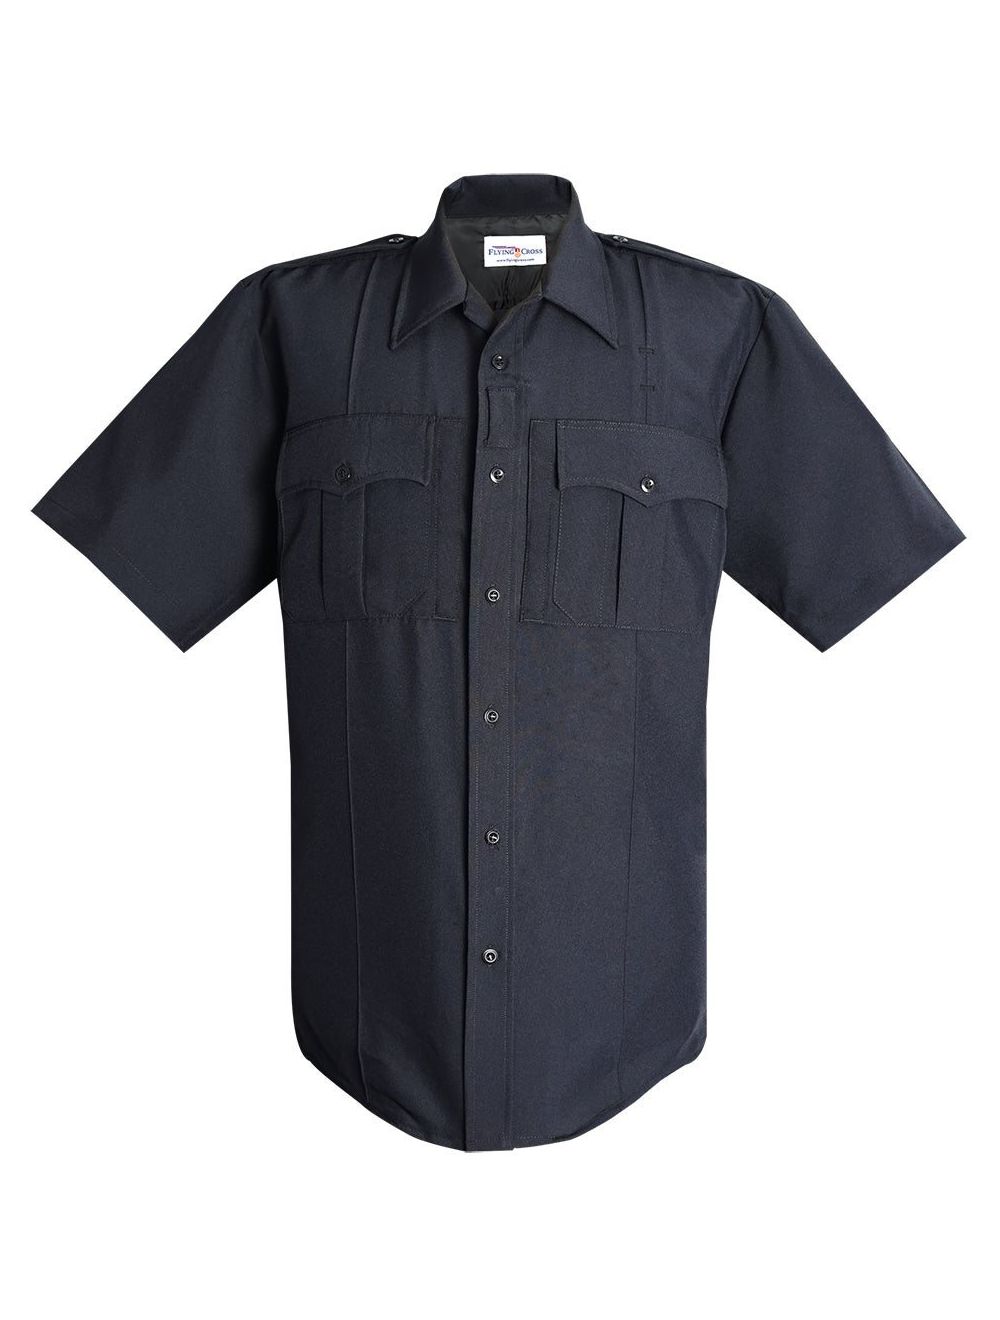 Command Power Stretch Short Sleeve Shirt w/ Zipper